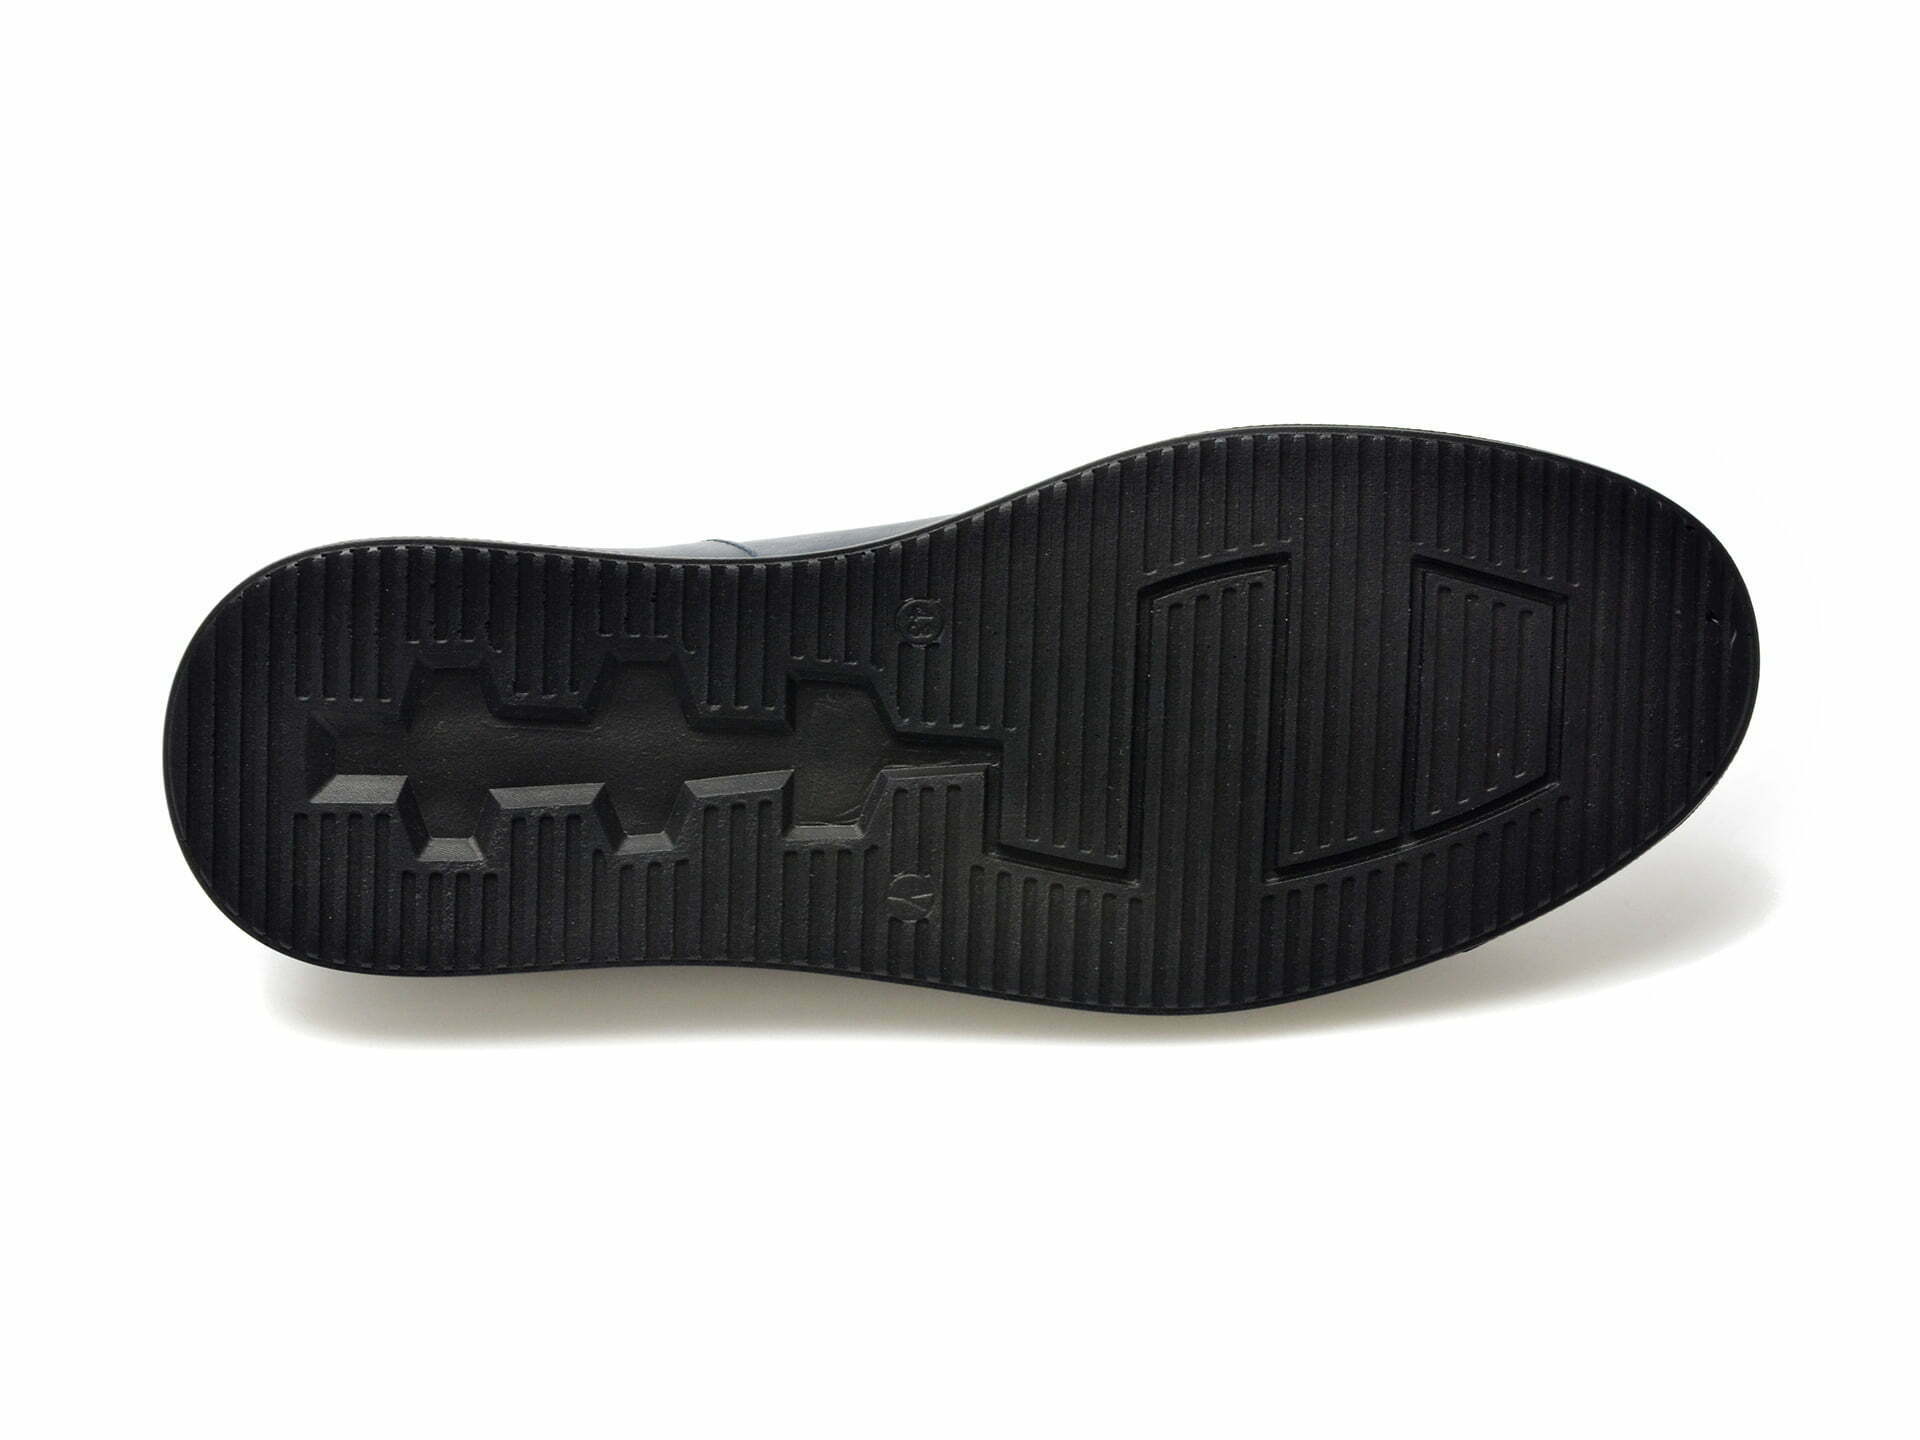 Comandă Încălțăminte Damă, la Reducere  Pantofi OTTER bleumarin, 131069, din piele naturala Branduri de top ✓